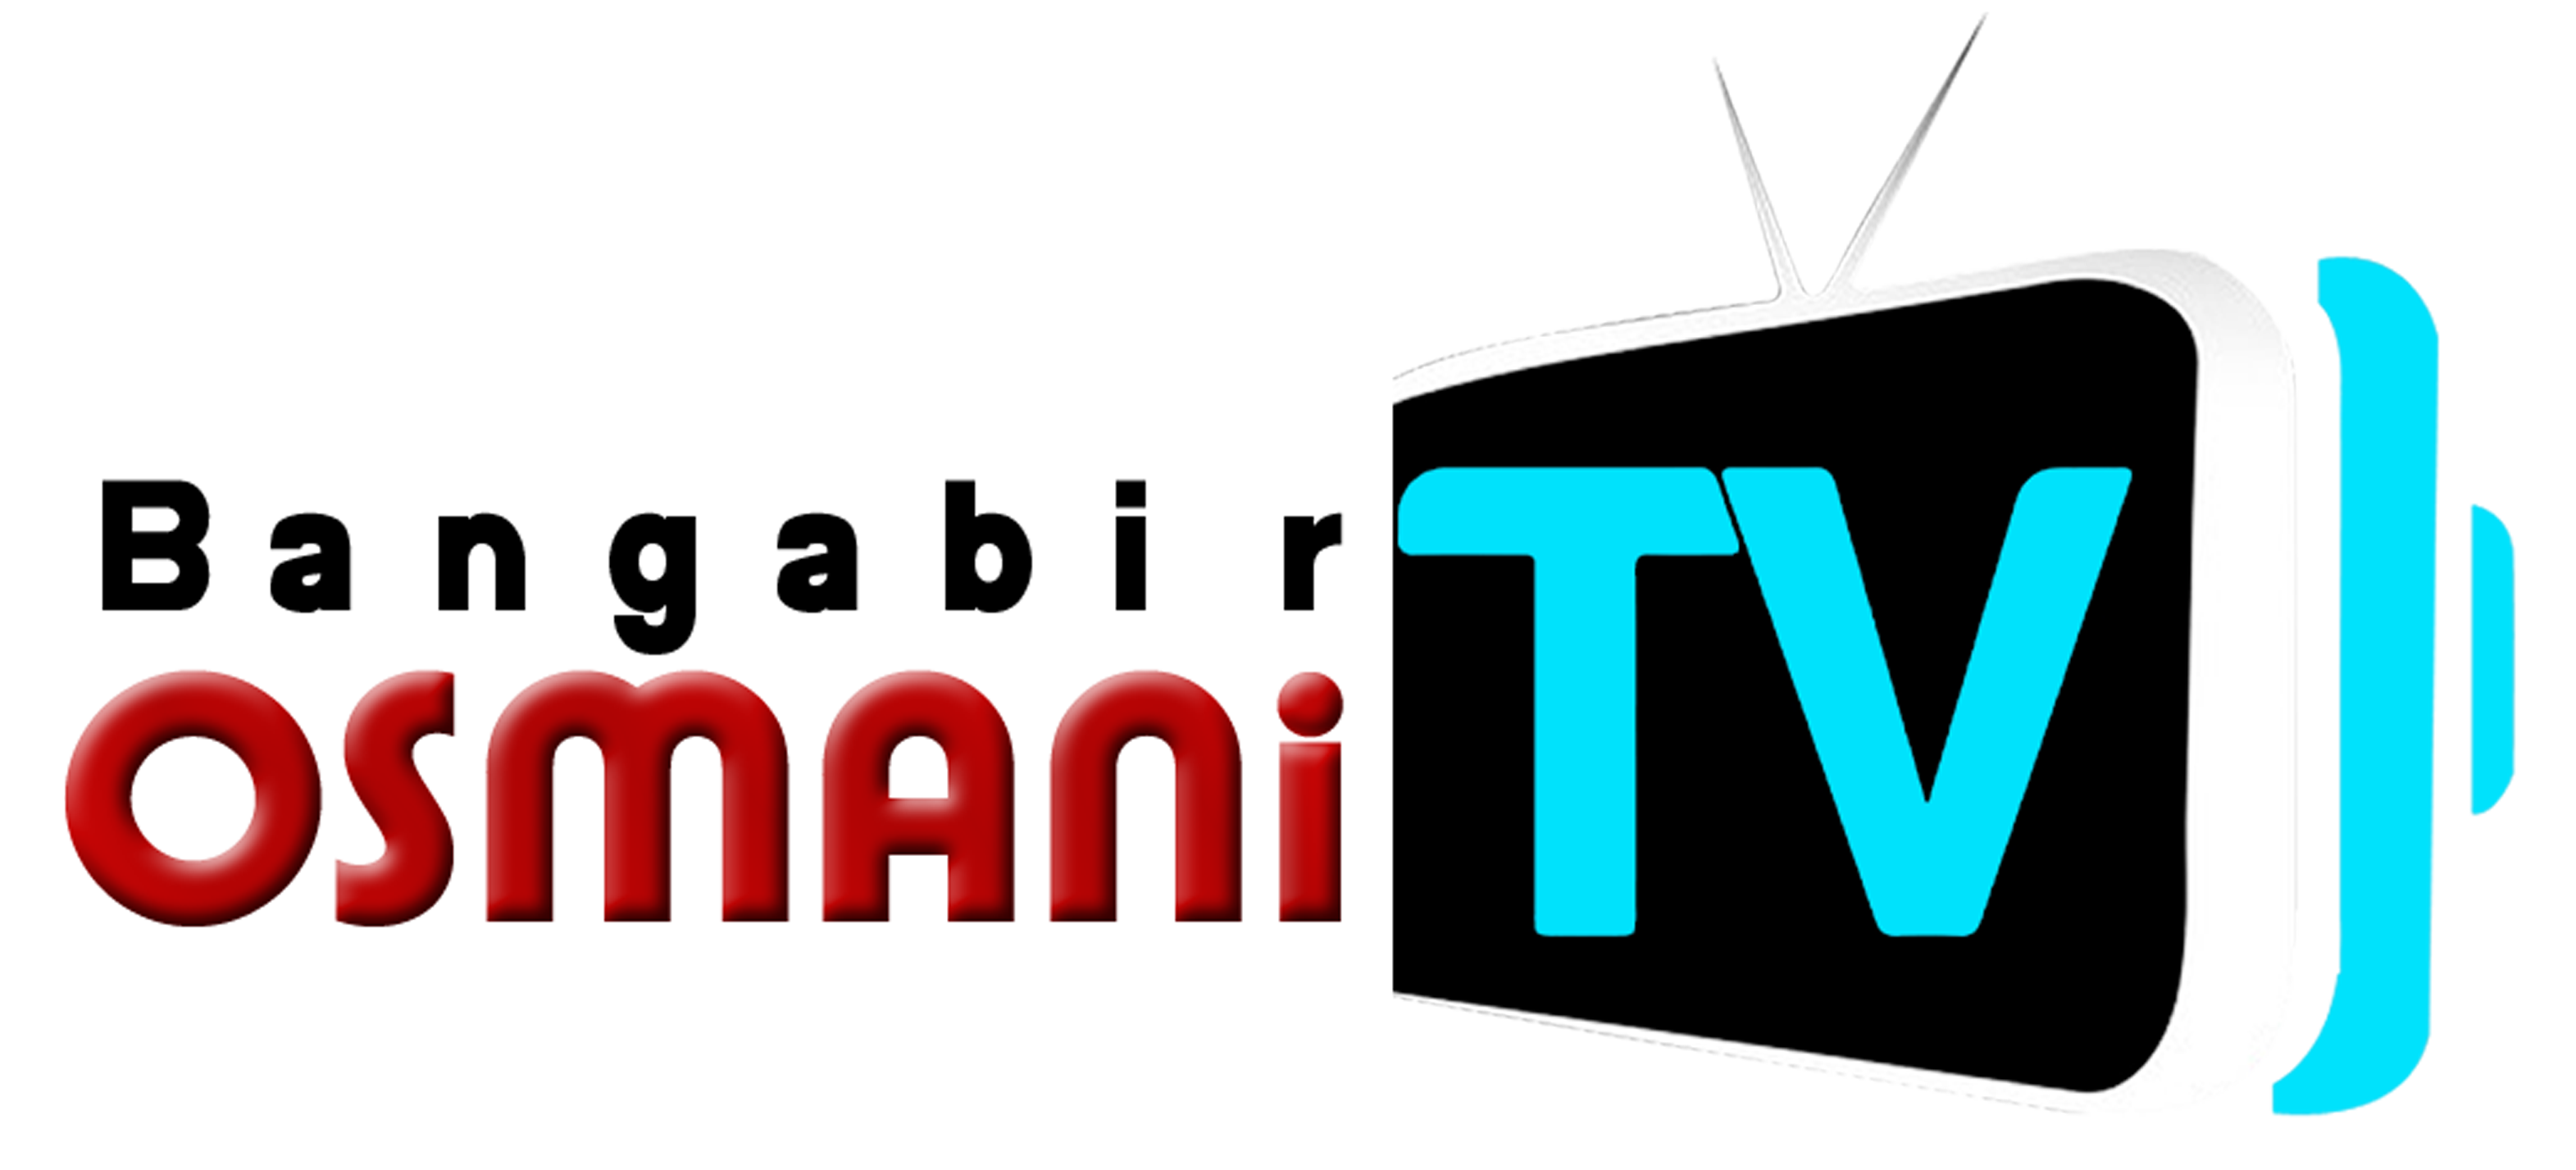 BANGABIR OSMANI TV